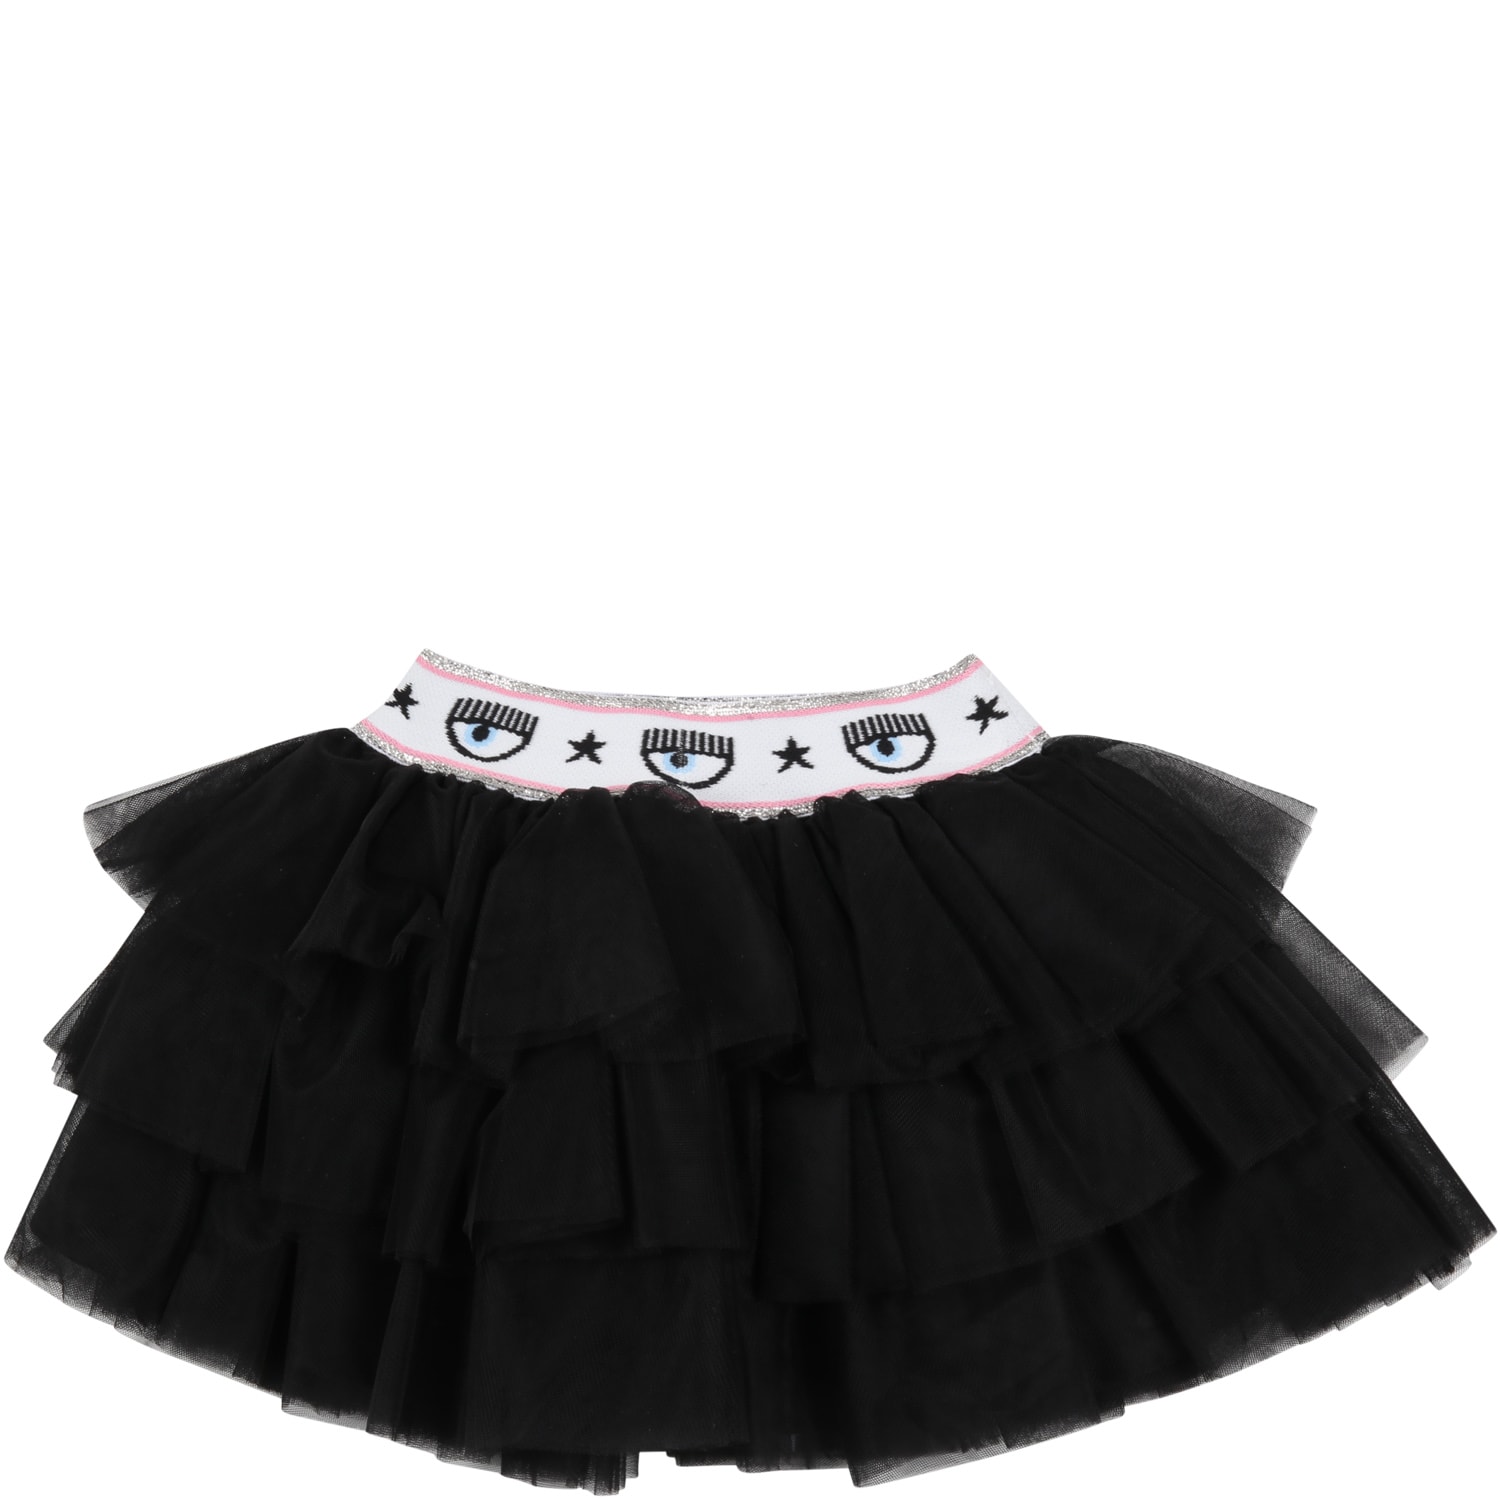 Chiara Ferragni Black Skirt For Baby Girl With Iconic Blinking Eye